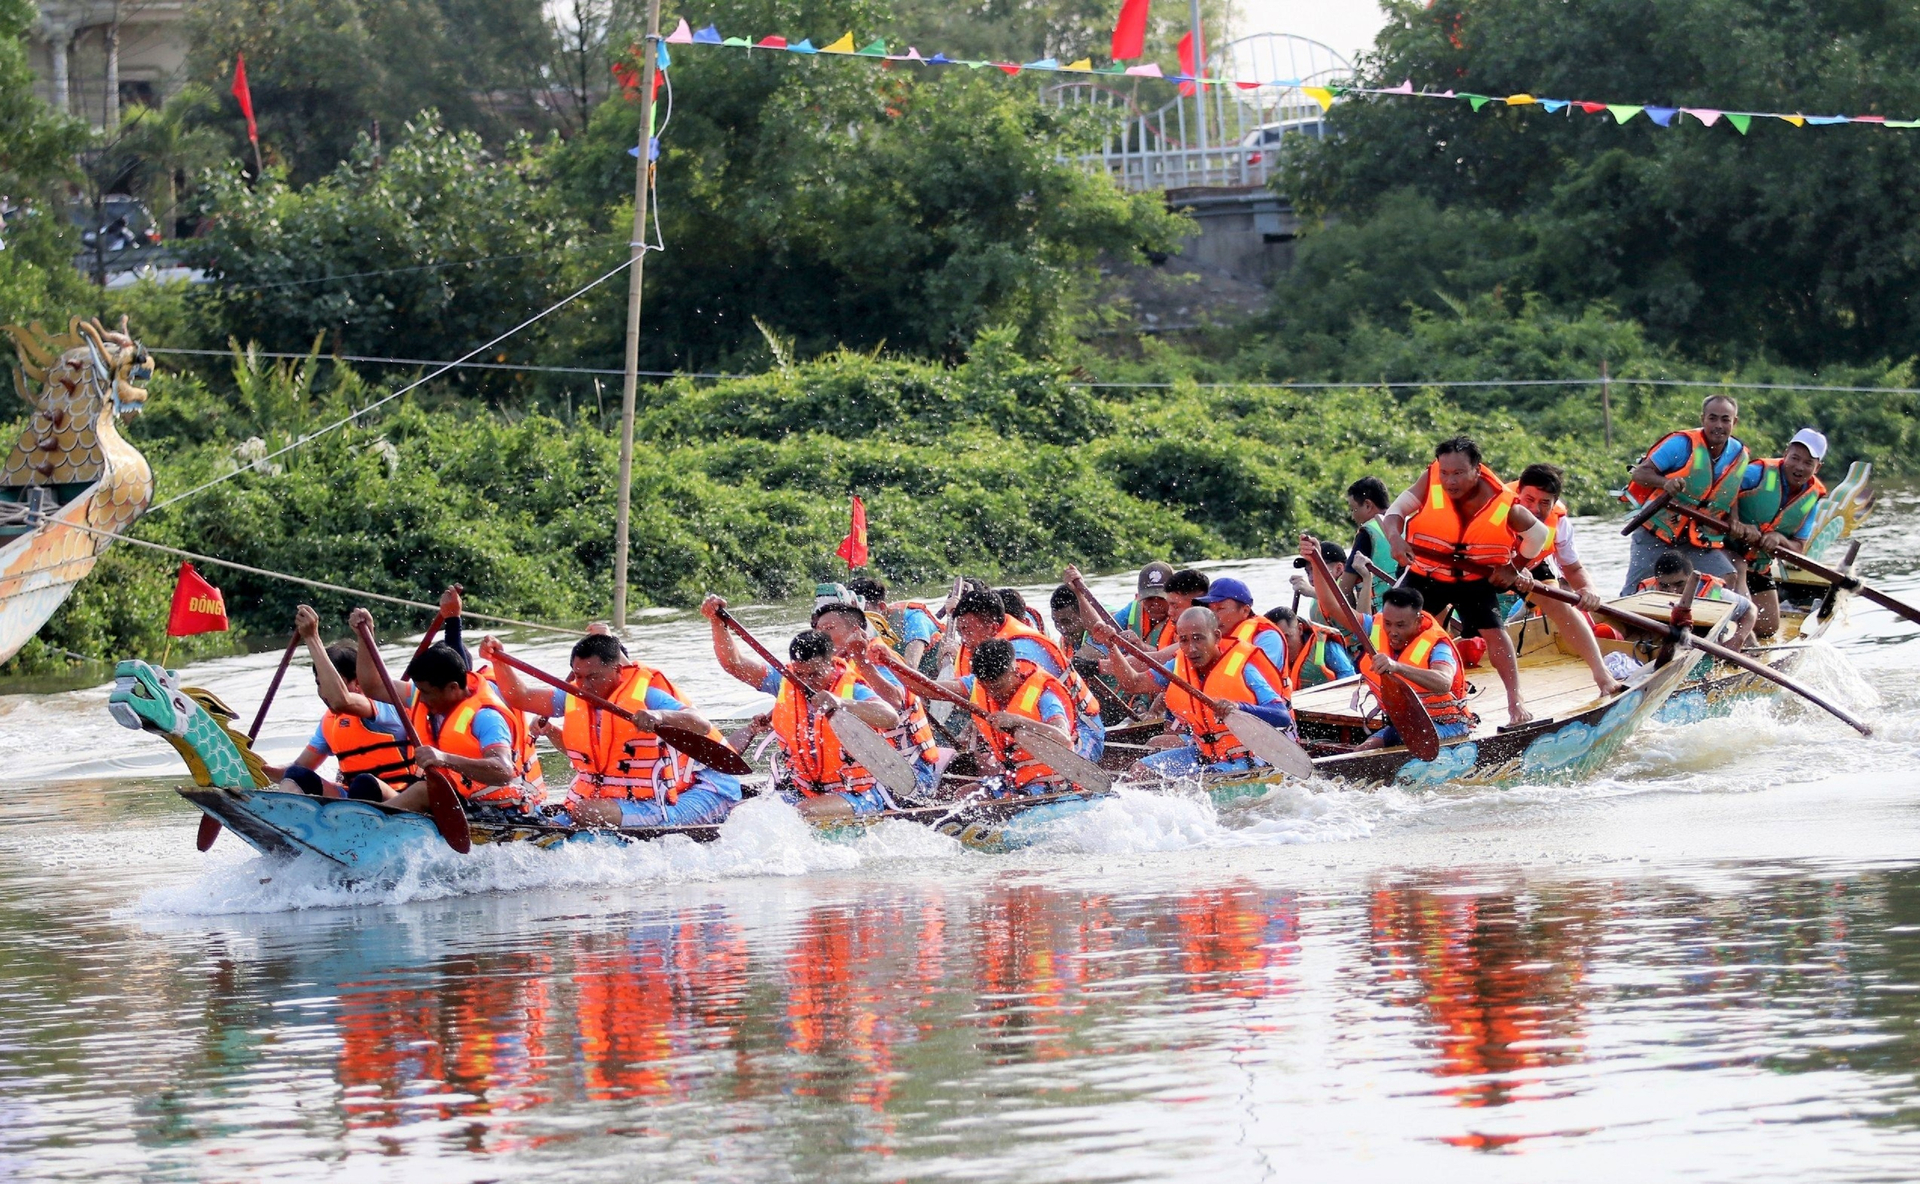 Theo lãnh đạo TP Hà Tĩnh, việc duy trì lễ hội đua thuyền hàng năm của thành phố nhằm phát huy, lan tỏa nét đẹp văn hóa truyền thống, từ đó tạo động lực thúc đẩy phát triển kinh tế, xã hội; là dịp để tăng cường tình đoàn kết, giao lưu, học hỏi giữa các địa phương.